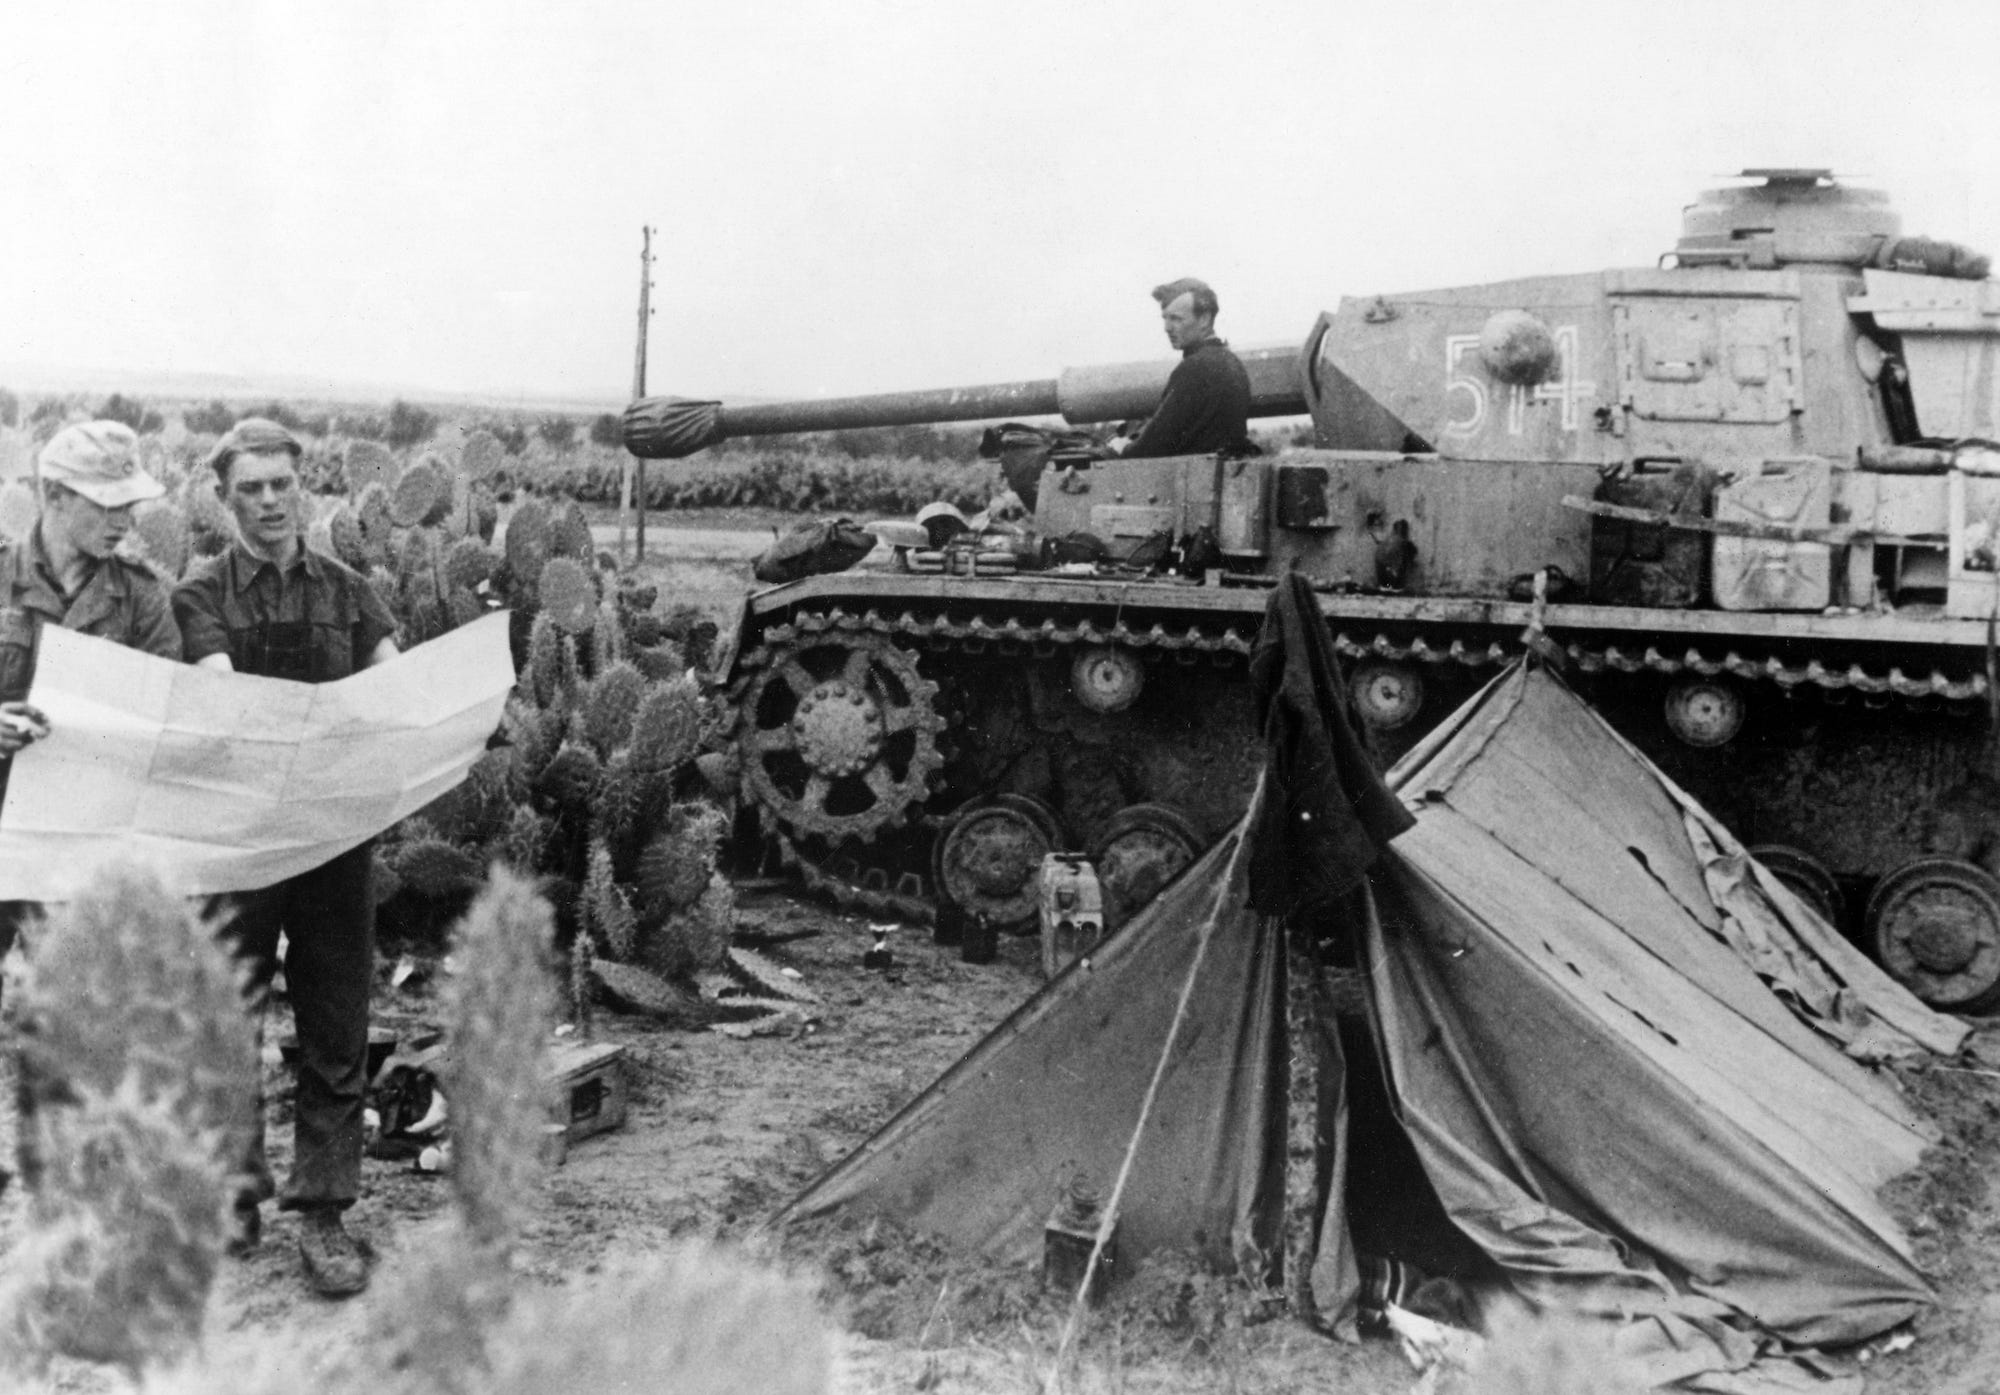 German tank crew at Kasserine Pass in Tunisia